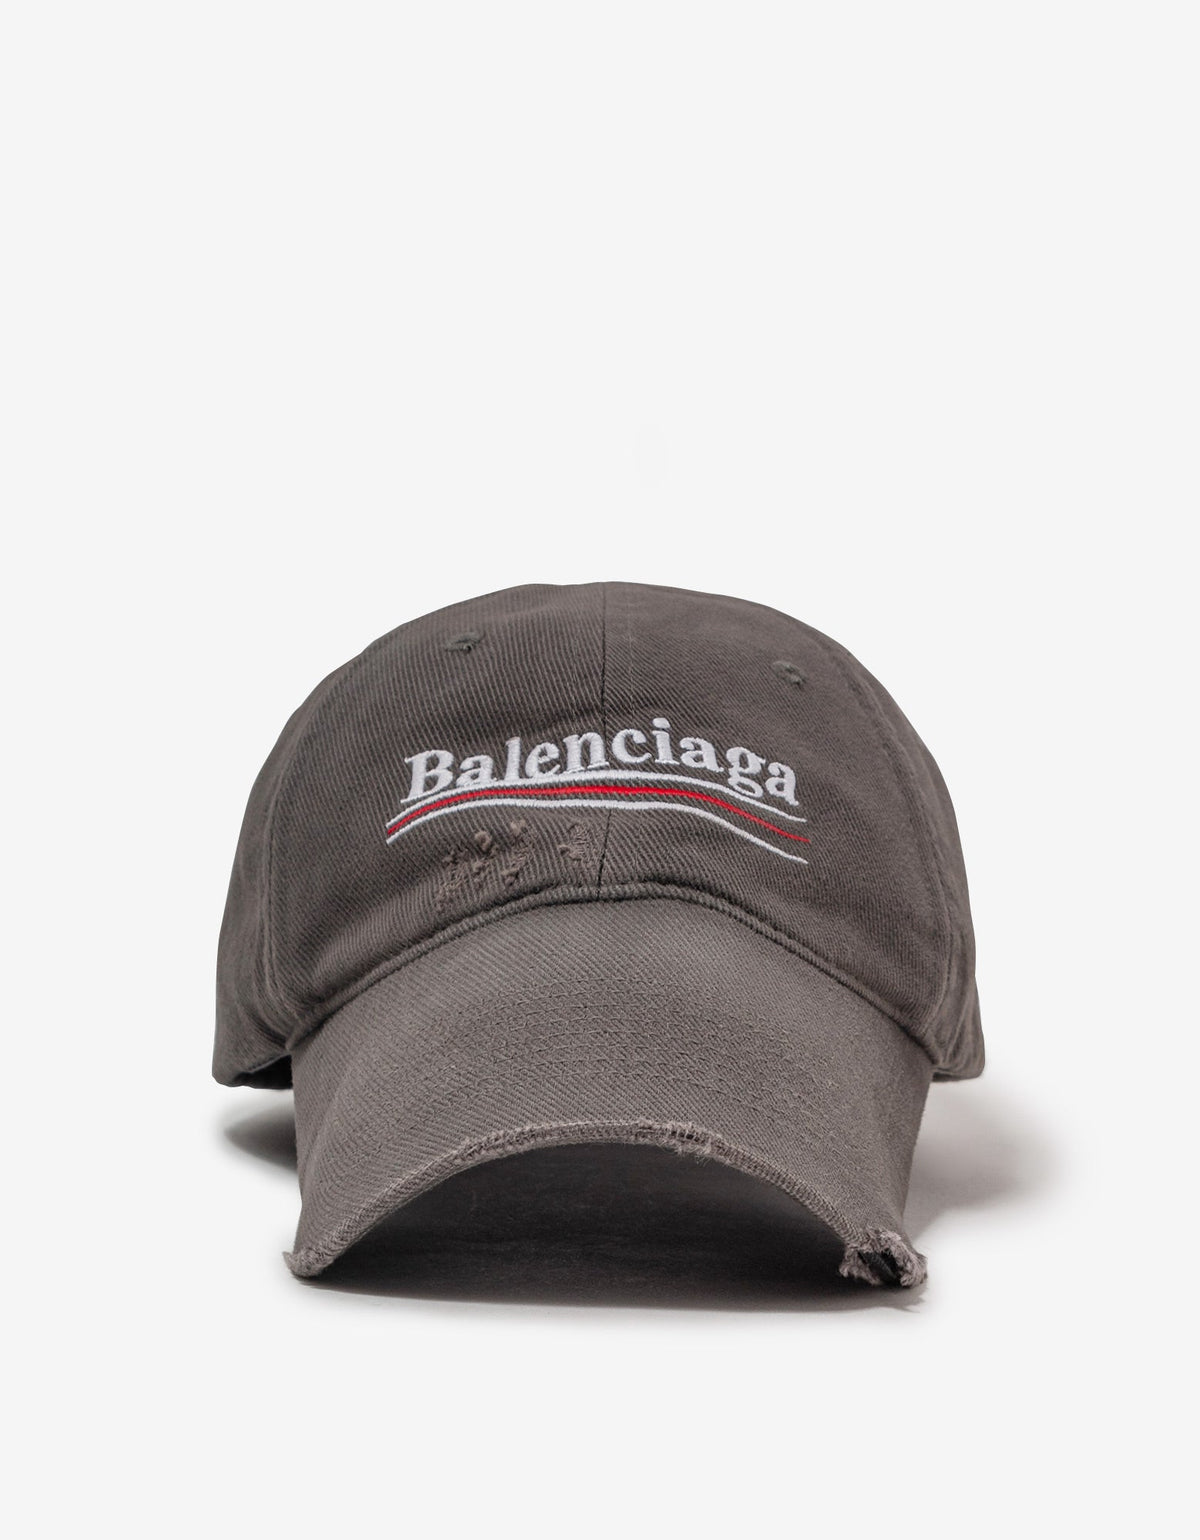 Balenciaga Grey Political Campaign Cap